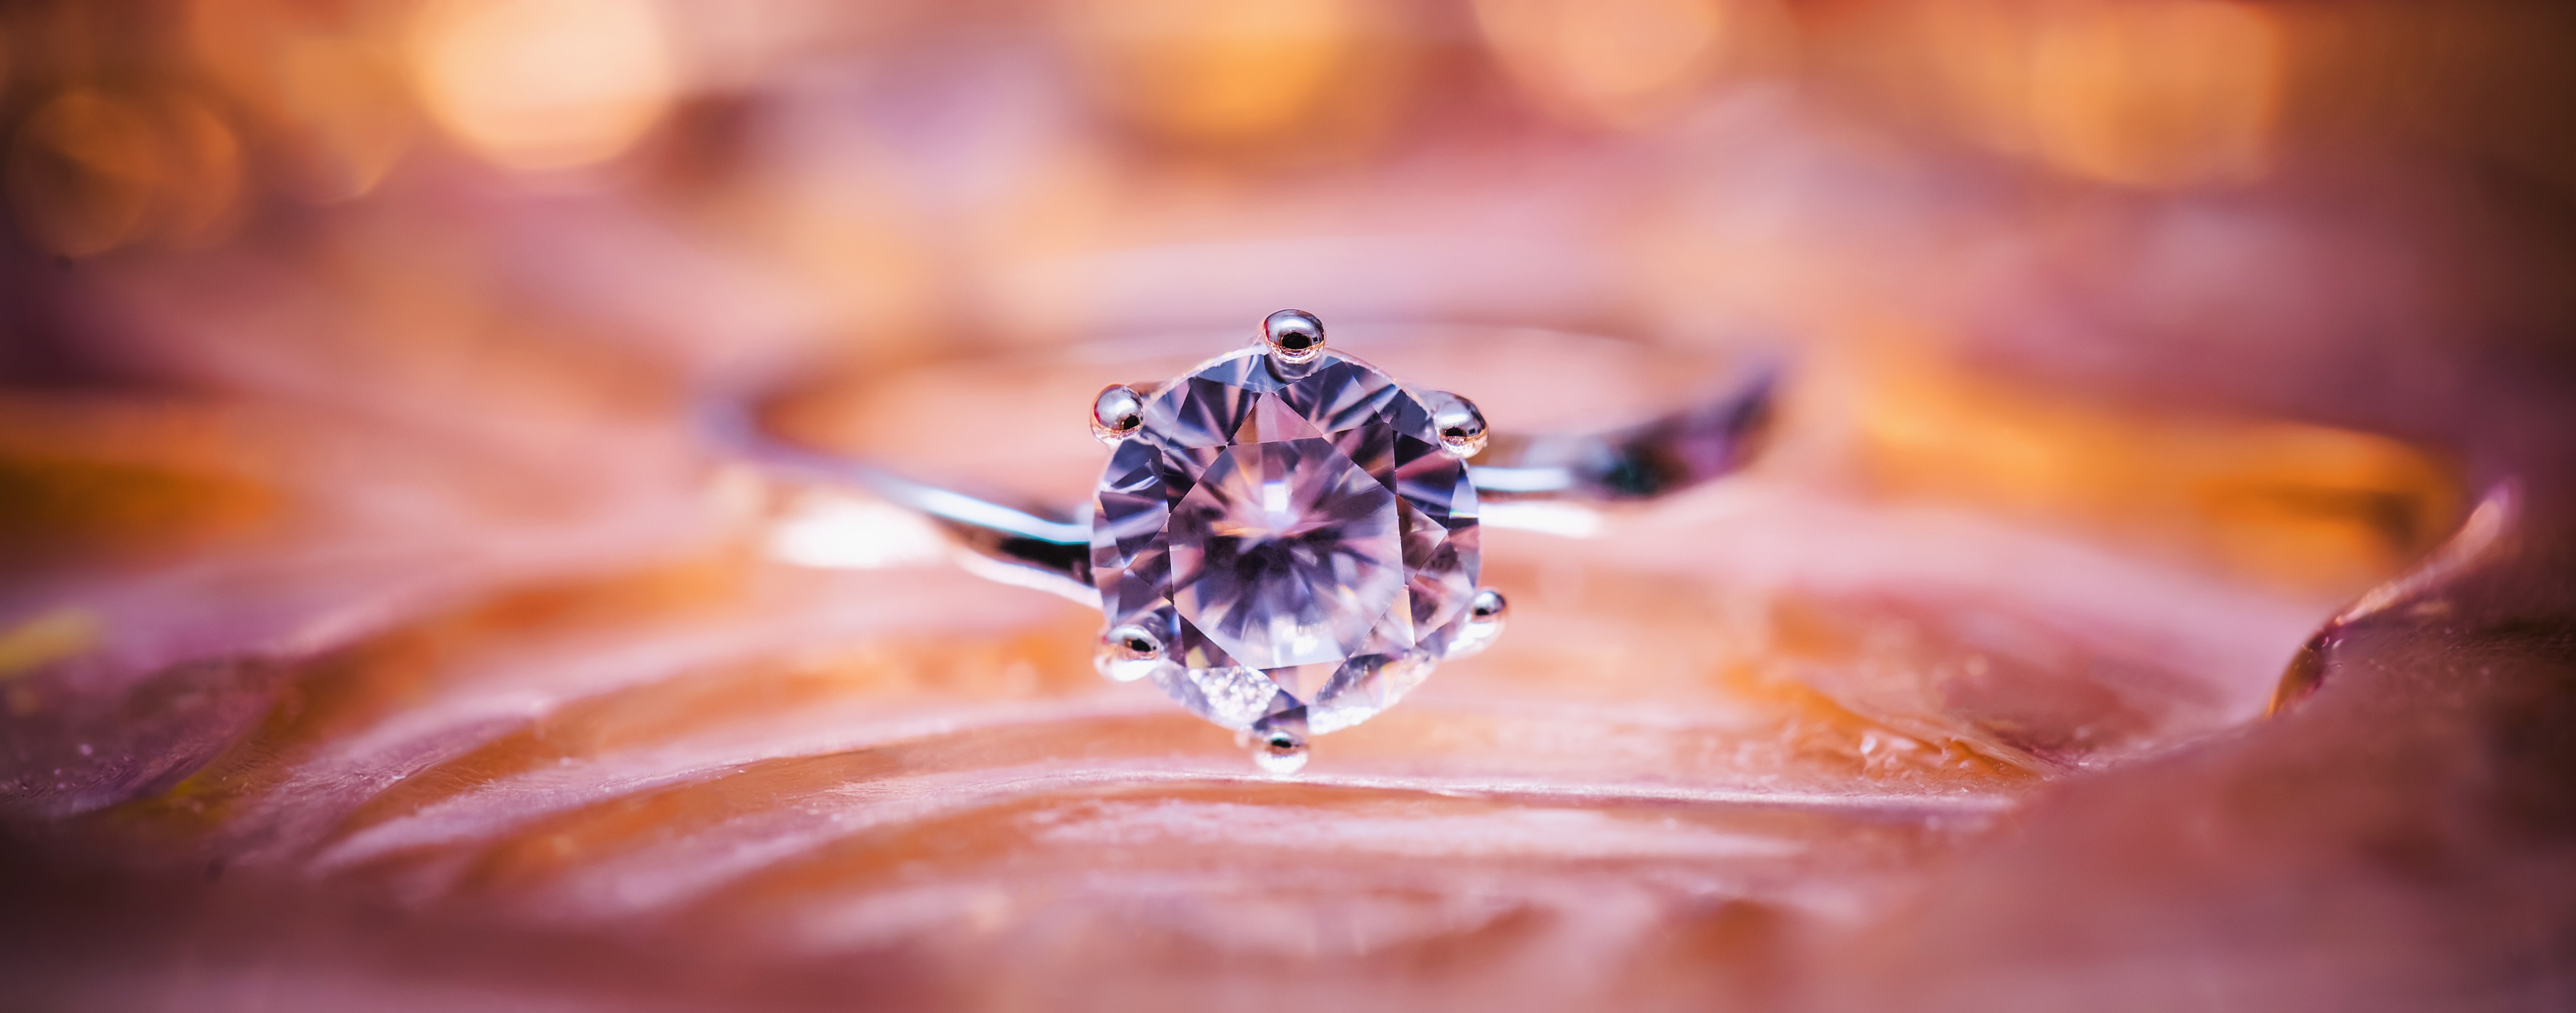 diamond-jewellery-jewelry-115567